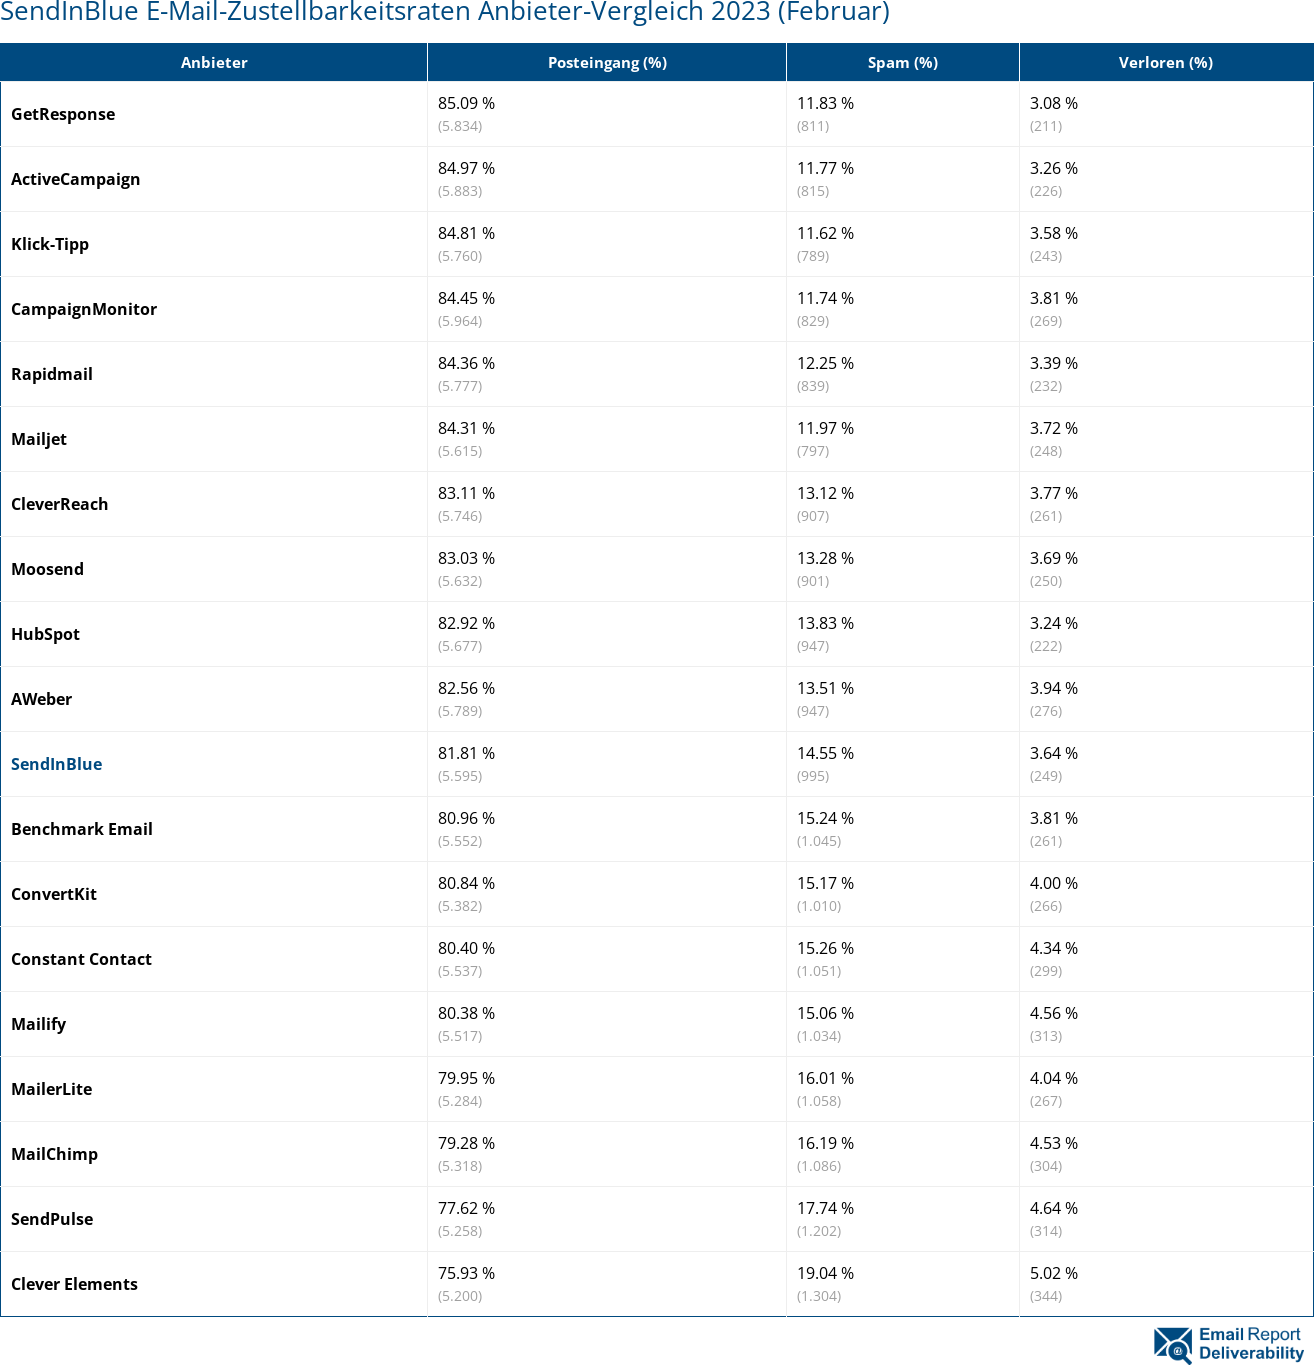 SendInBlue E-Mail-Zustellbarkeitsraten Anbieter-Vergleich 2023 (Februar)